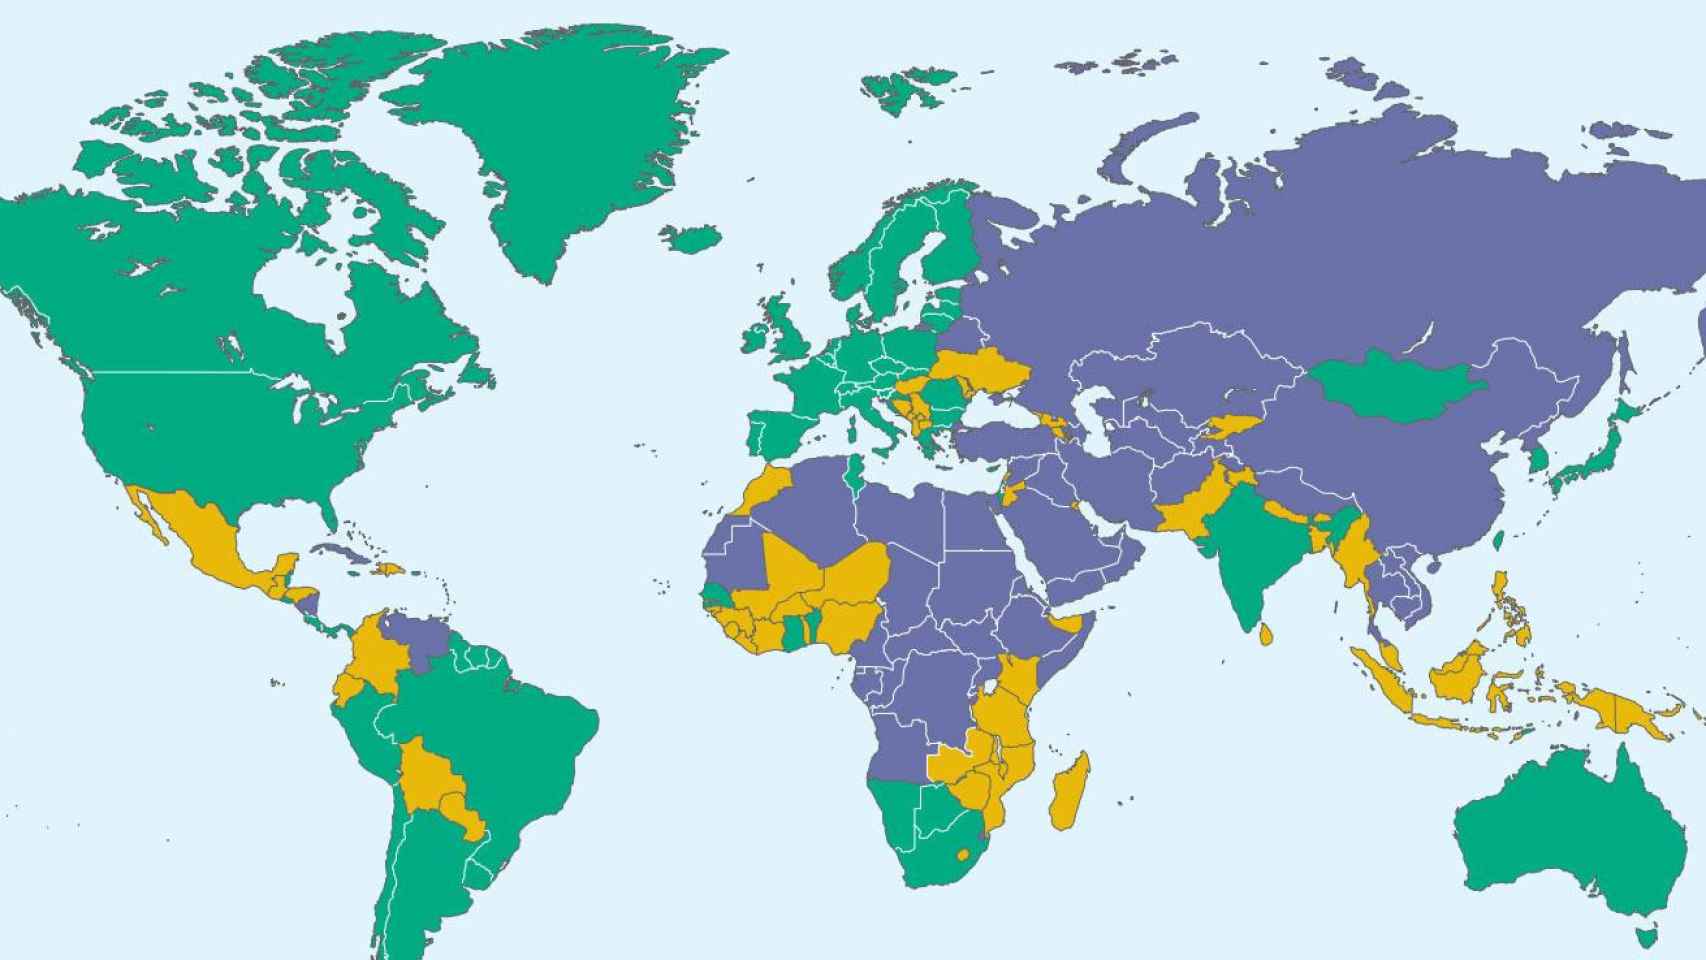 Mapa de Freedom House sobre el nivel de respeto a los derechos políticos y libertades civiles en el mundo / FREEDOM HOUSE